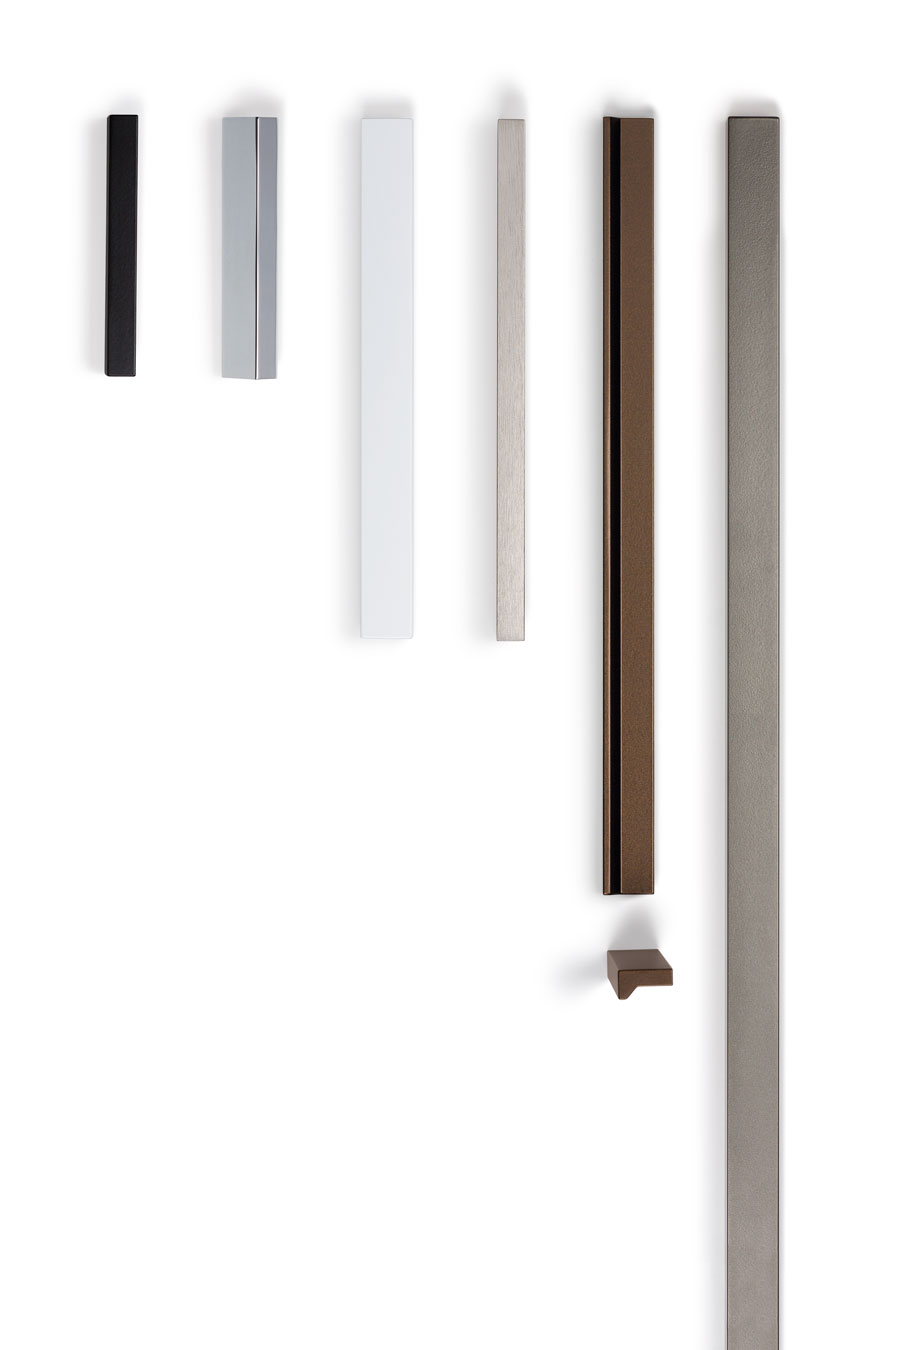 Angle handle for kitchens, bedrooms and bathrooms decoration. Tirador Angle de cocinas, habitaciones y baños by Viefe